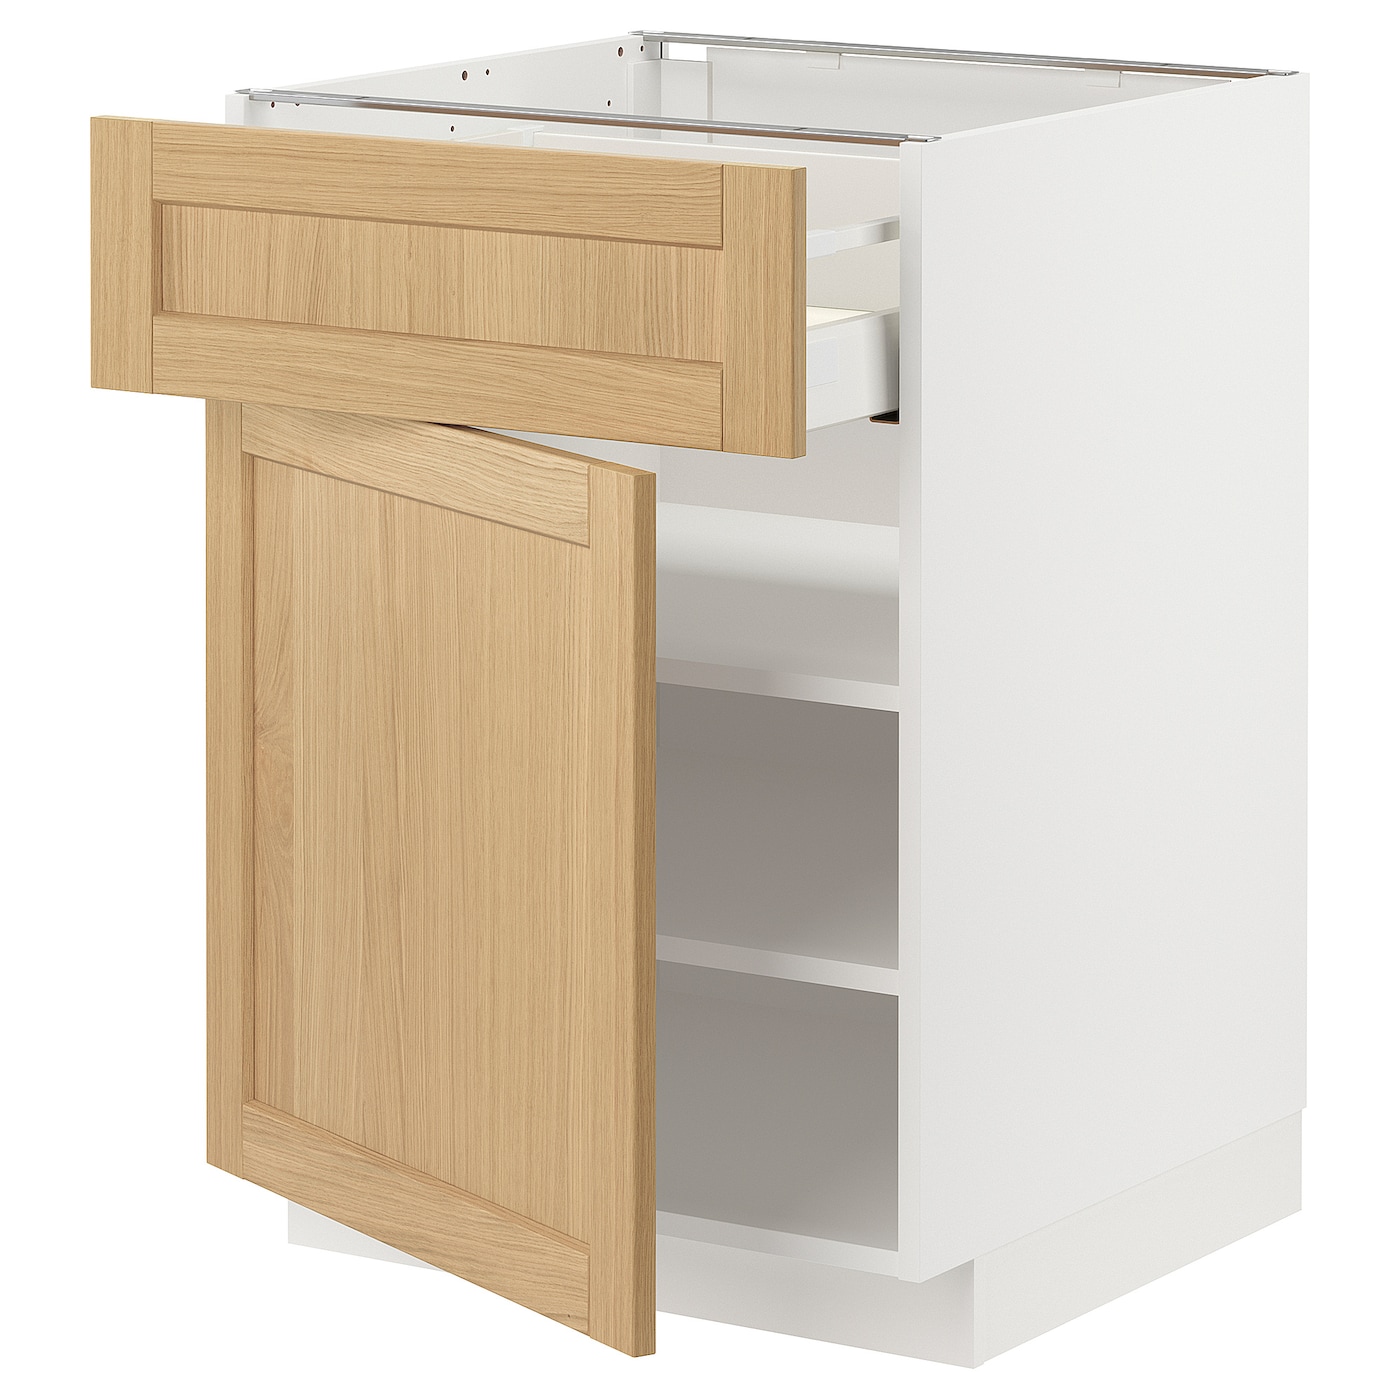 Напольный шкаф - METOD / MAXIMERA IKEA/ МЕТОД/ МАКСИМЕРА ИКЕА,  60х60 см, белый/под беленый дуб